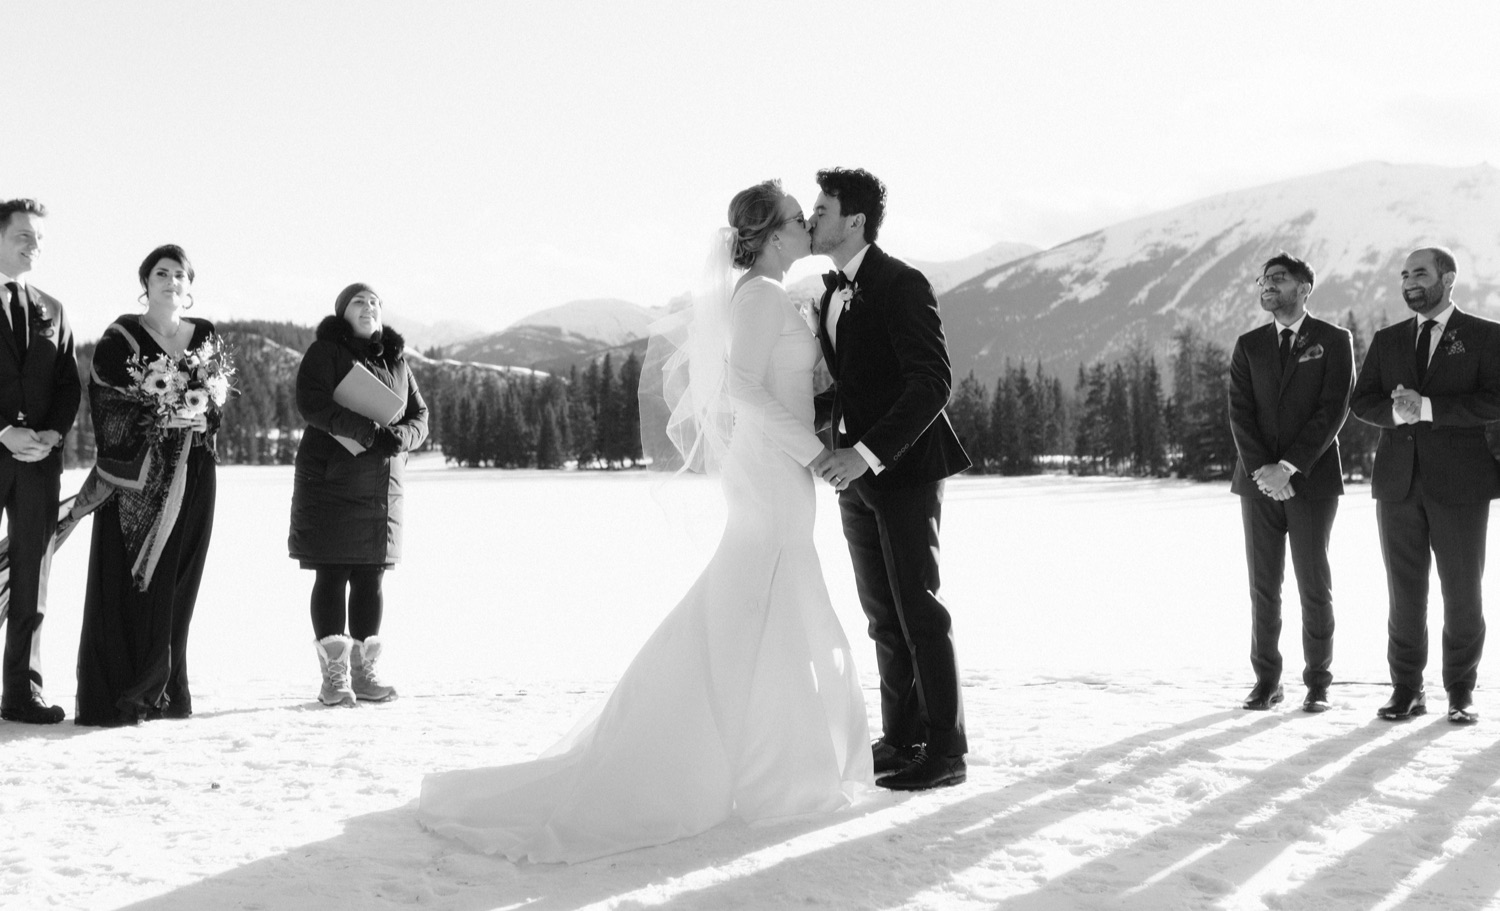 Timeless first kiss at Jasper Park Lodge outdoor winter wedding